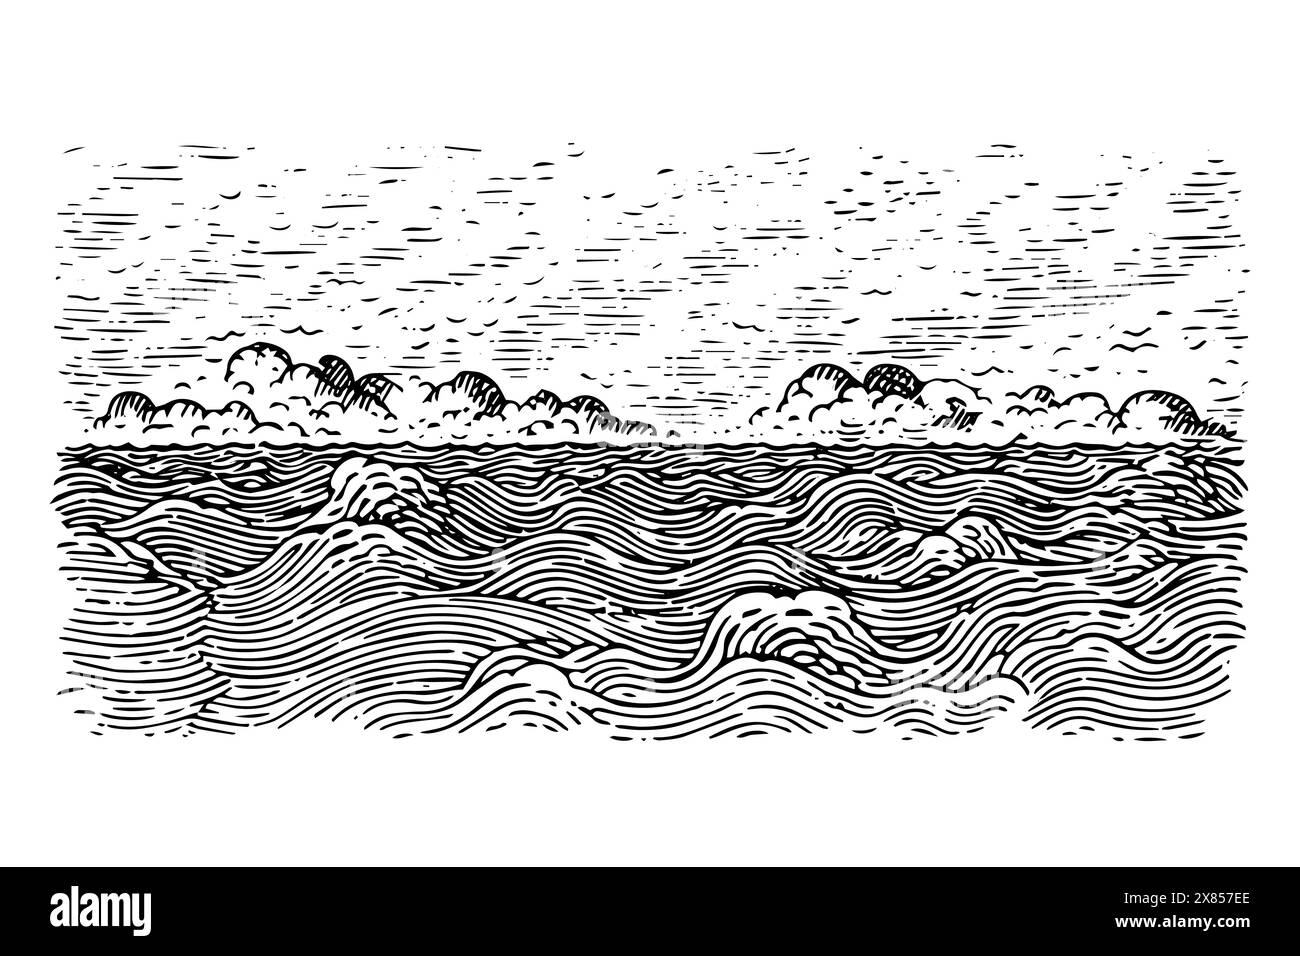 Vintage Sea Wave Sketch: Engraved Vector Illustration of Nature Landscape. Stock Vector